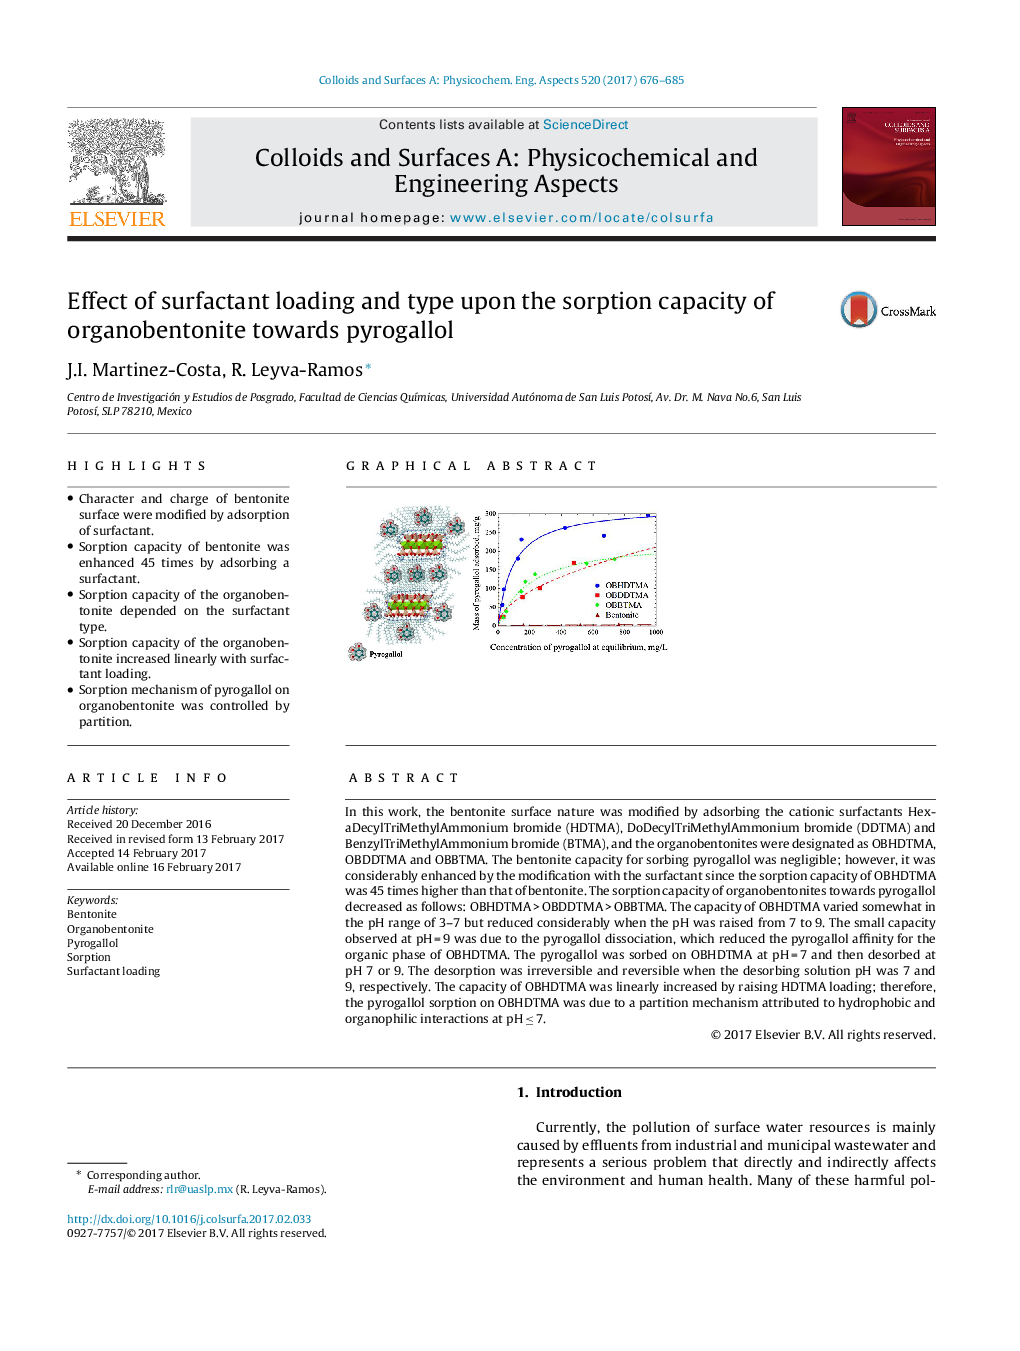 اثر بارگذاری و نوع سورفاکتانت بر ظرفیت جذب ارگانو بنتونیت نسبت به پریگلولول 